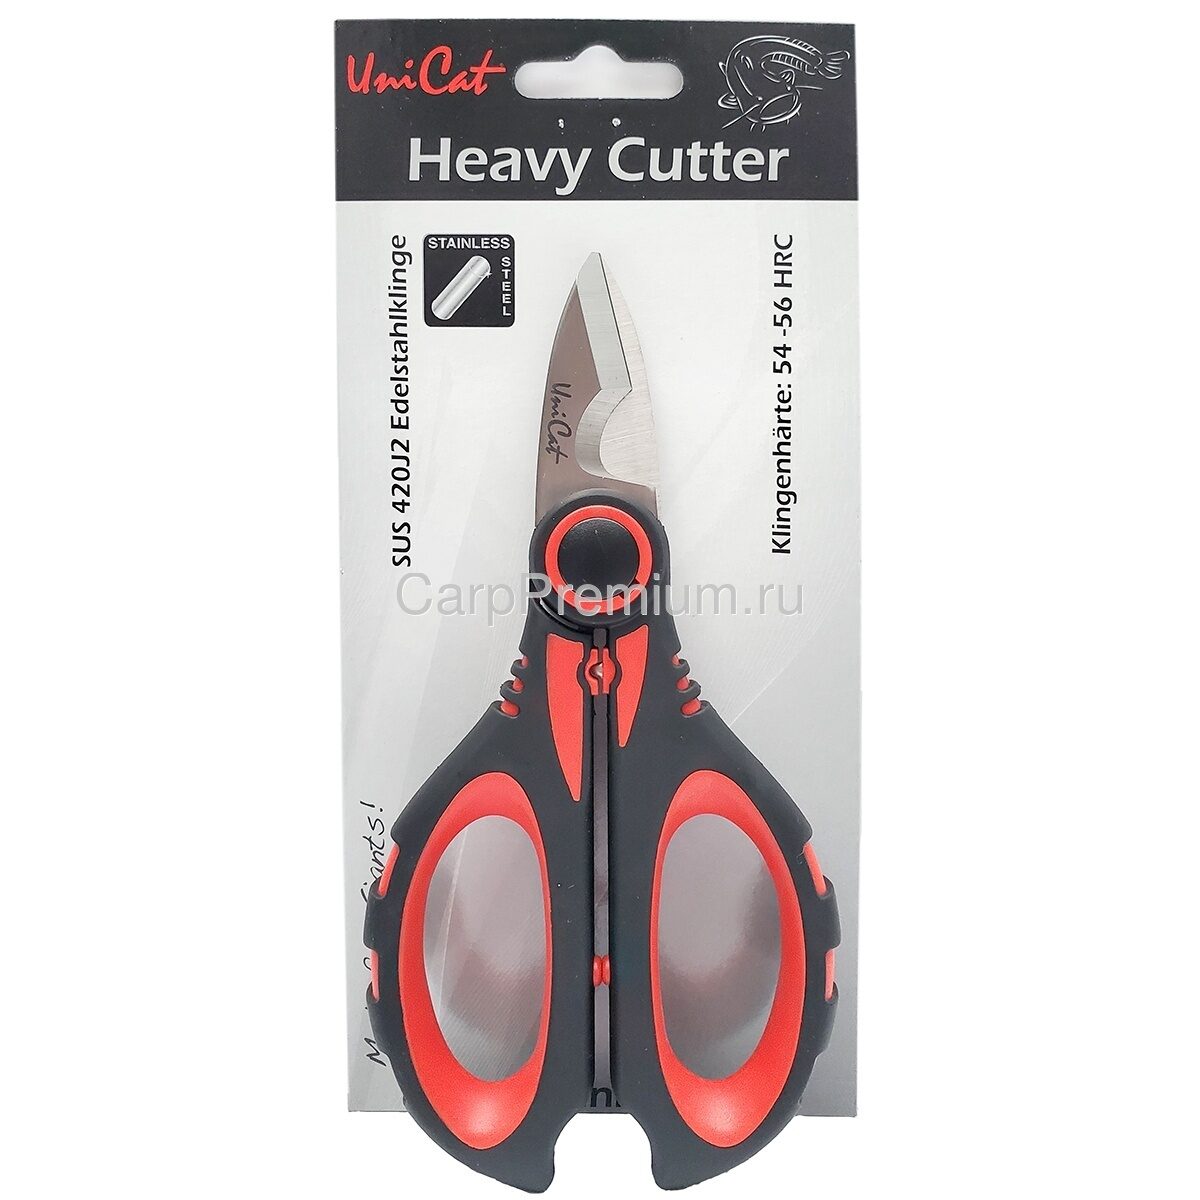 Ножницы для поводков 16 см Uni Cat (Юни Кэт) - Heavy Cutter